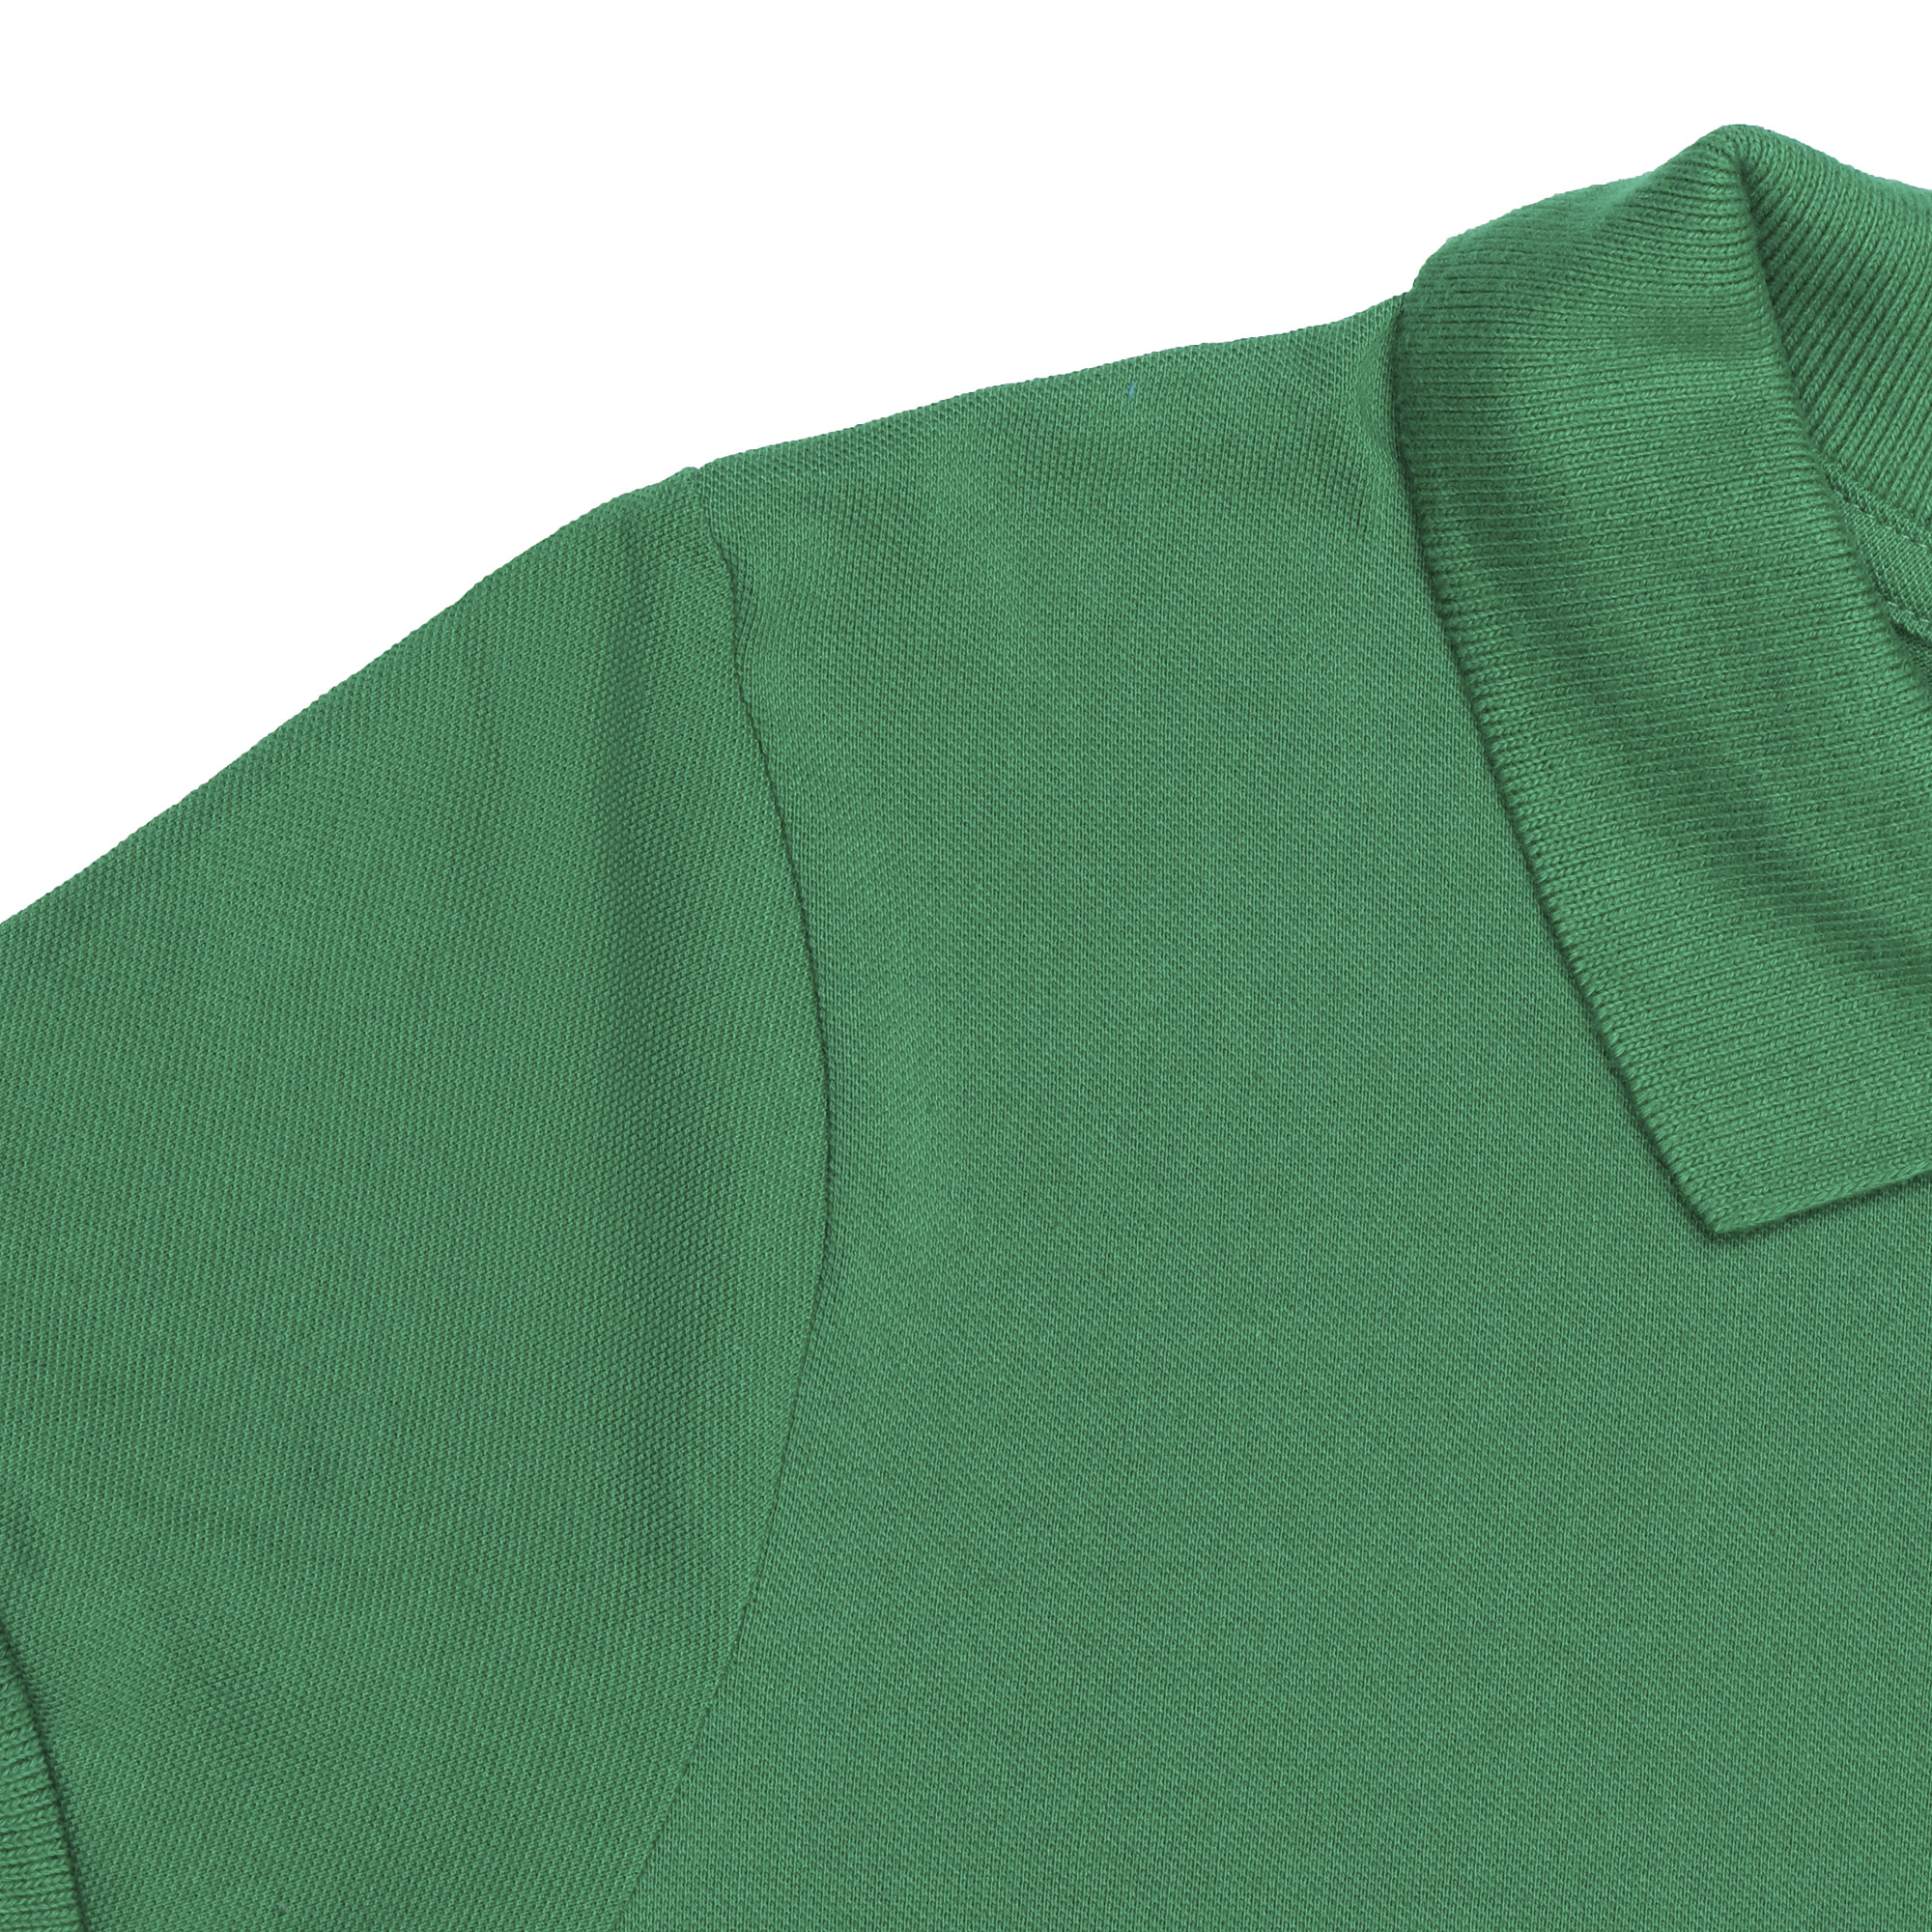 Женское поло AMADEY  с коротким рукавом S зеленое, цвет зеленый, размер S - фото 2